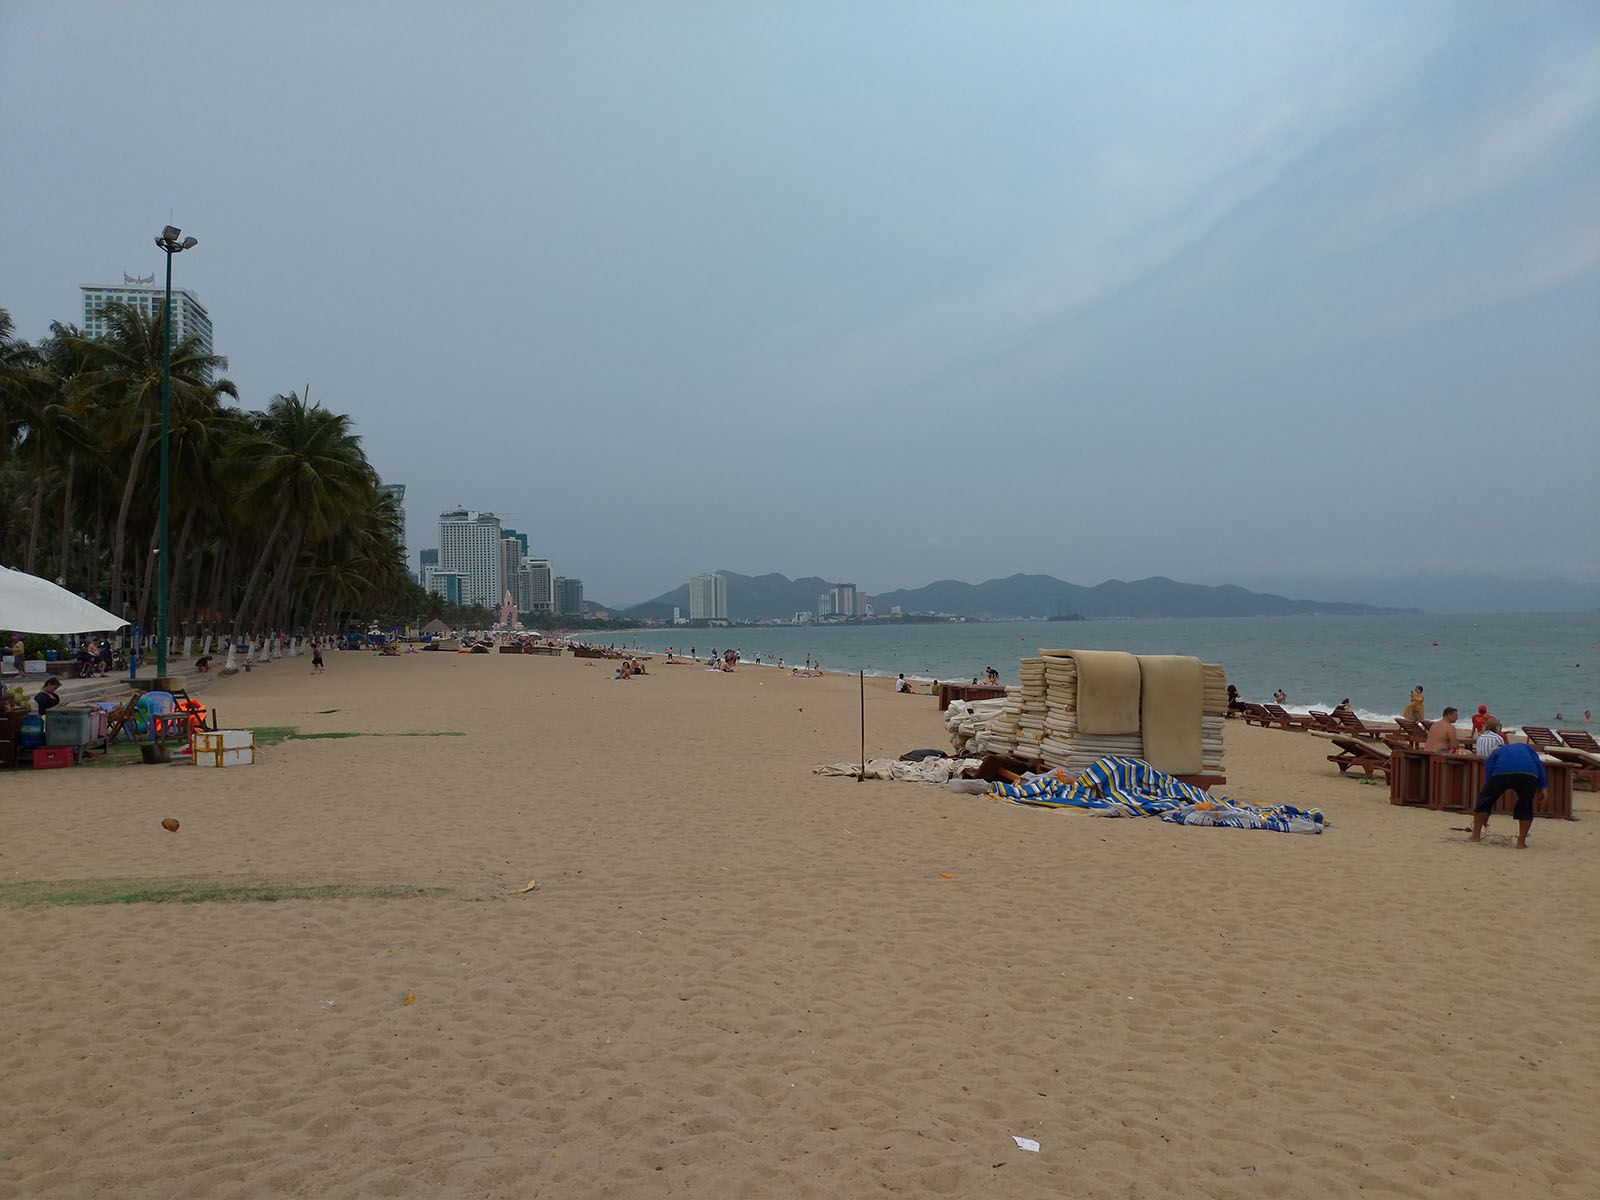 ホテル前のビーチ